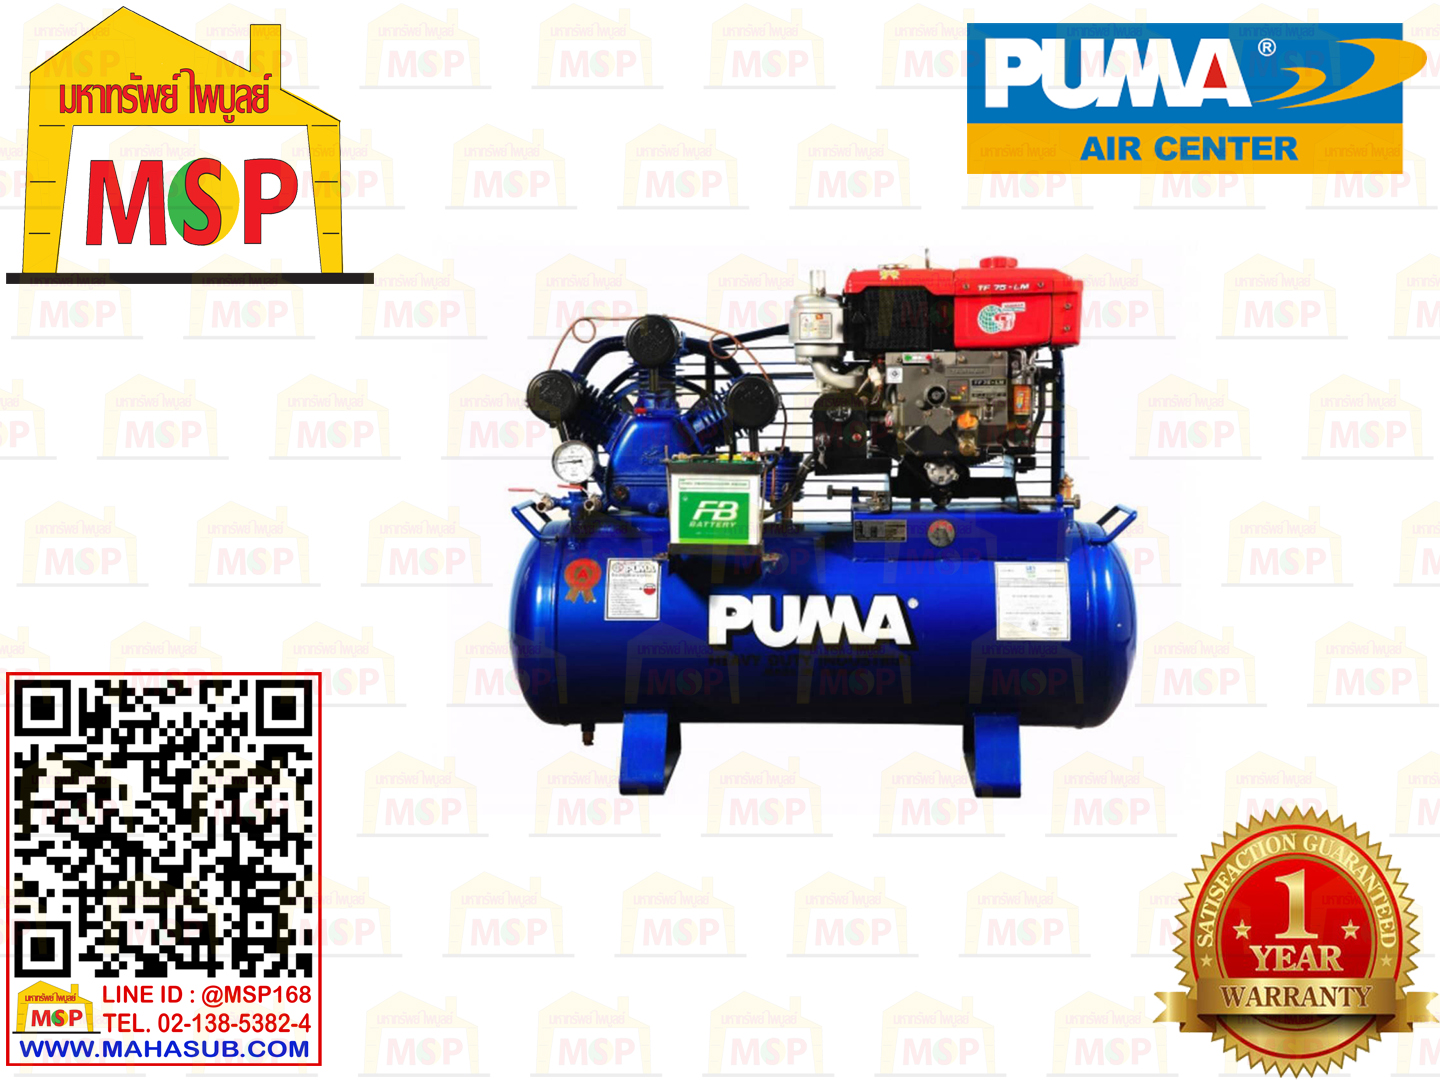 Puma เฉพาะ ถังปั๊มลมพร้อมหัวปั๊ม TPU-75 7.5HP 2ลูกสูบ 315L 8BAR UNLOADING ไม่รวมเครื่องยนต์ TPU